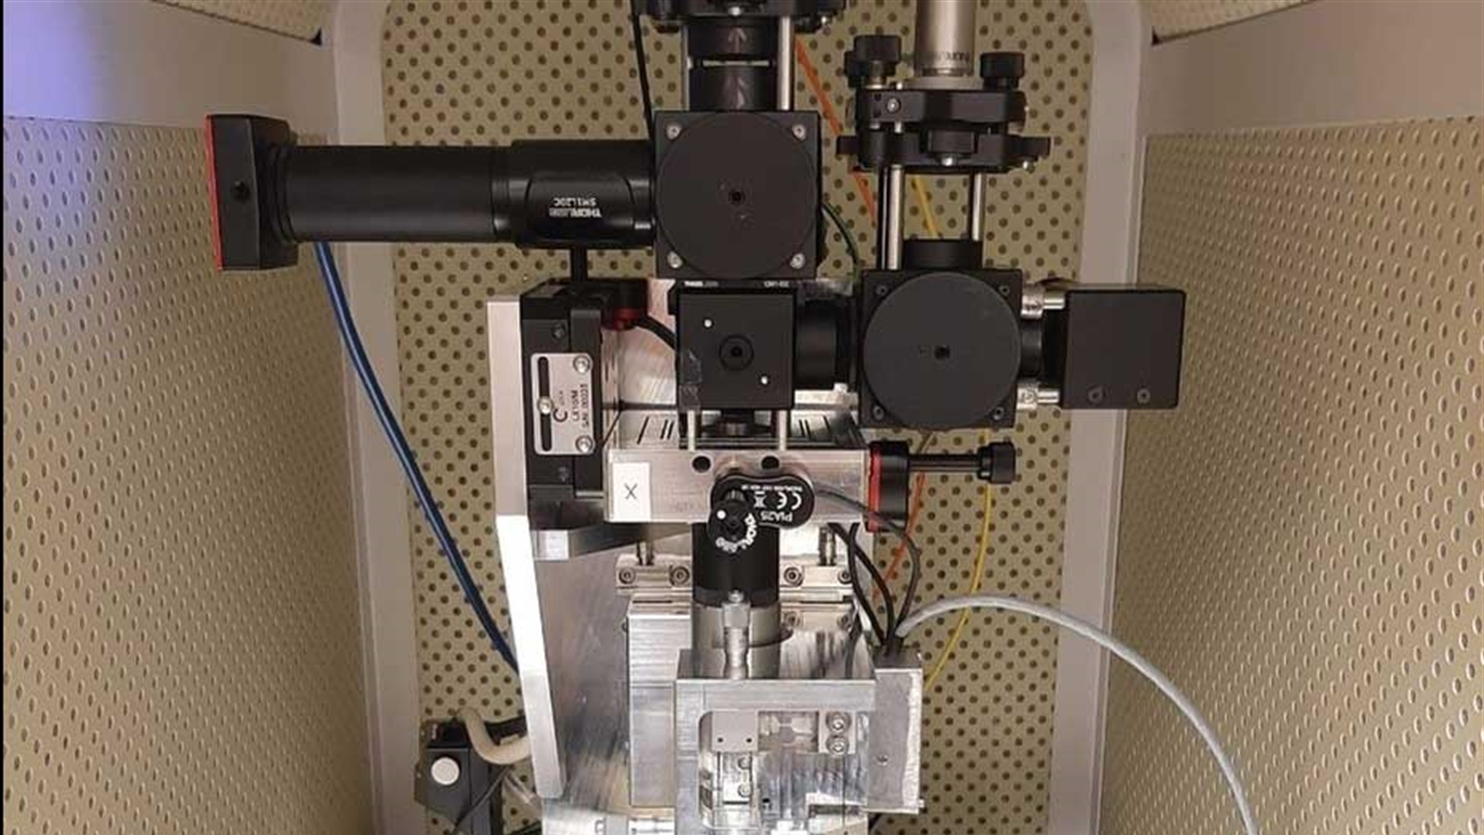 Scanning probe quantum magnetometer, een van de instrumenten die beschikbaar zijn in de quantum sensing testbed